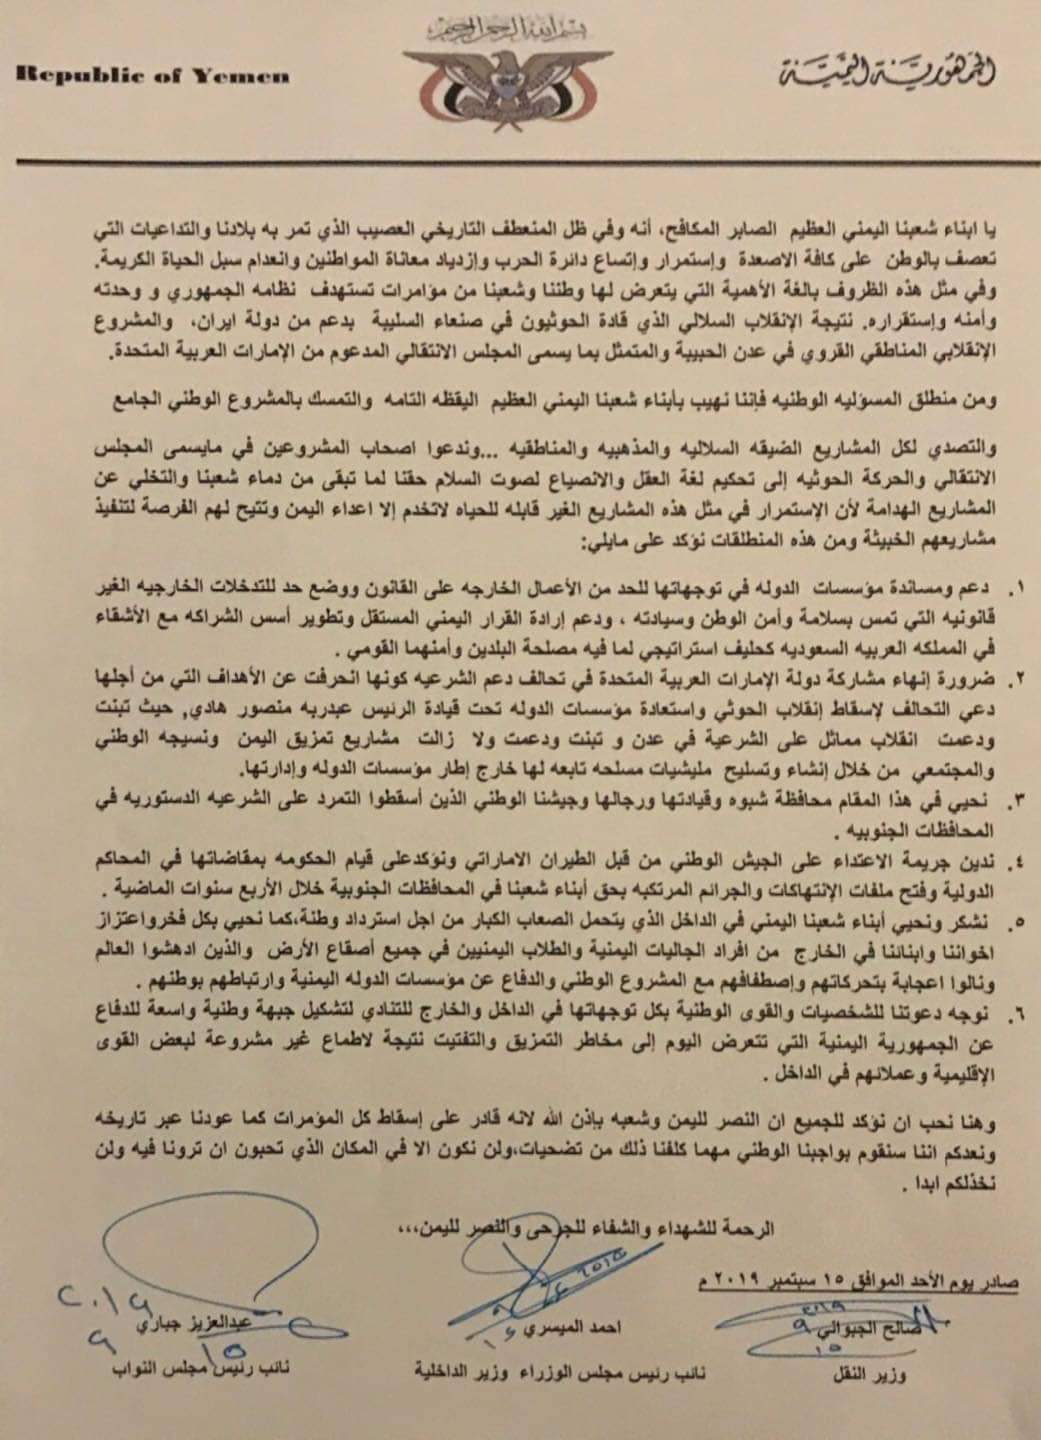 تمسك بخروج الإمارات كمطلب رئيسي للتسوية .. وزراء يمنيون يصدرون بيانا هاما ( وثيقة )